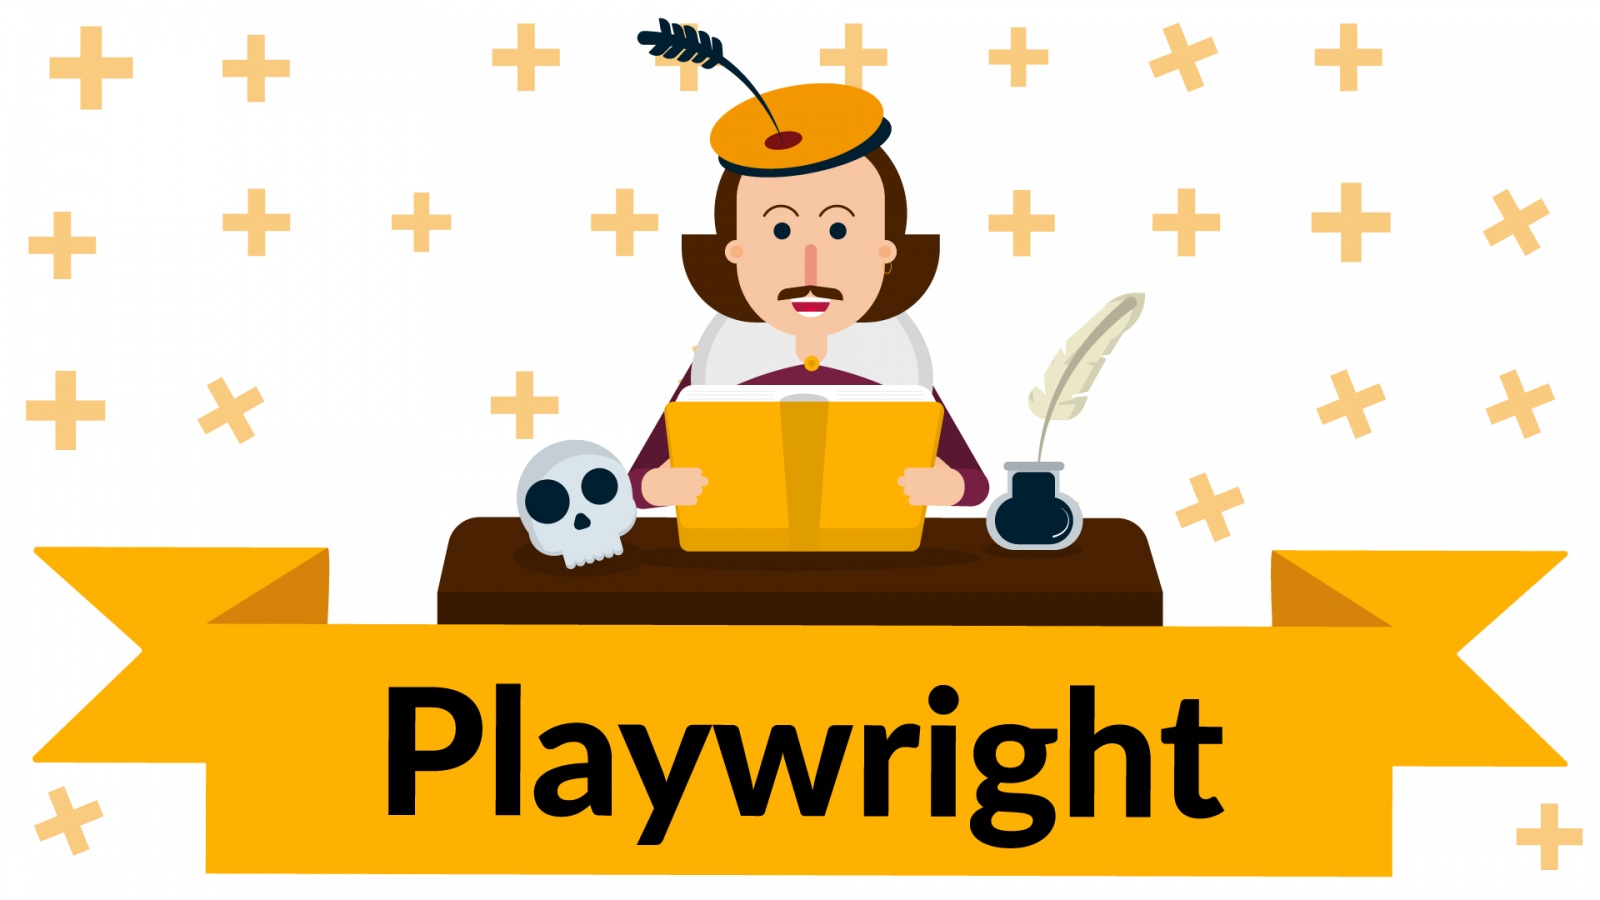 Playwright — драматургия от Microsoft и новый инструмент для тестирования - 1